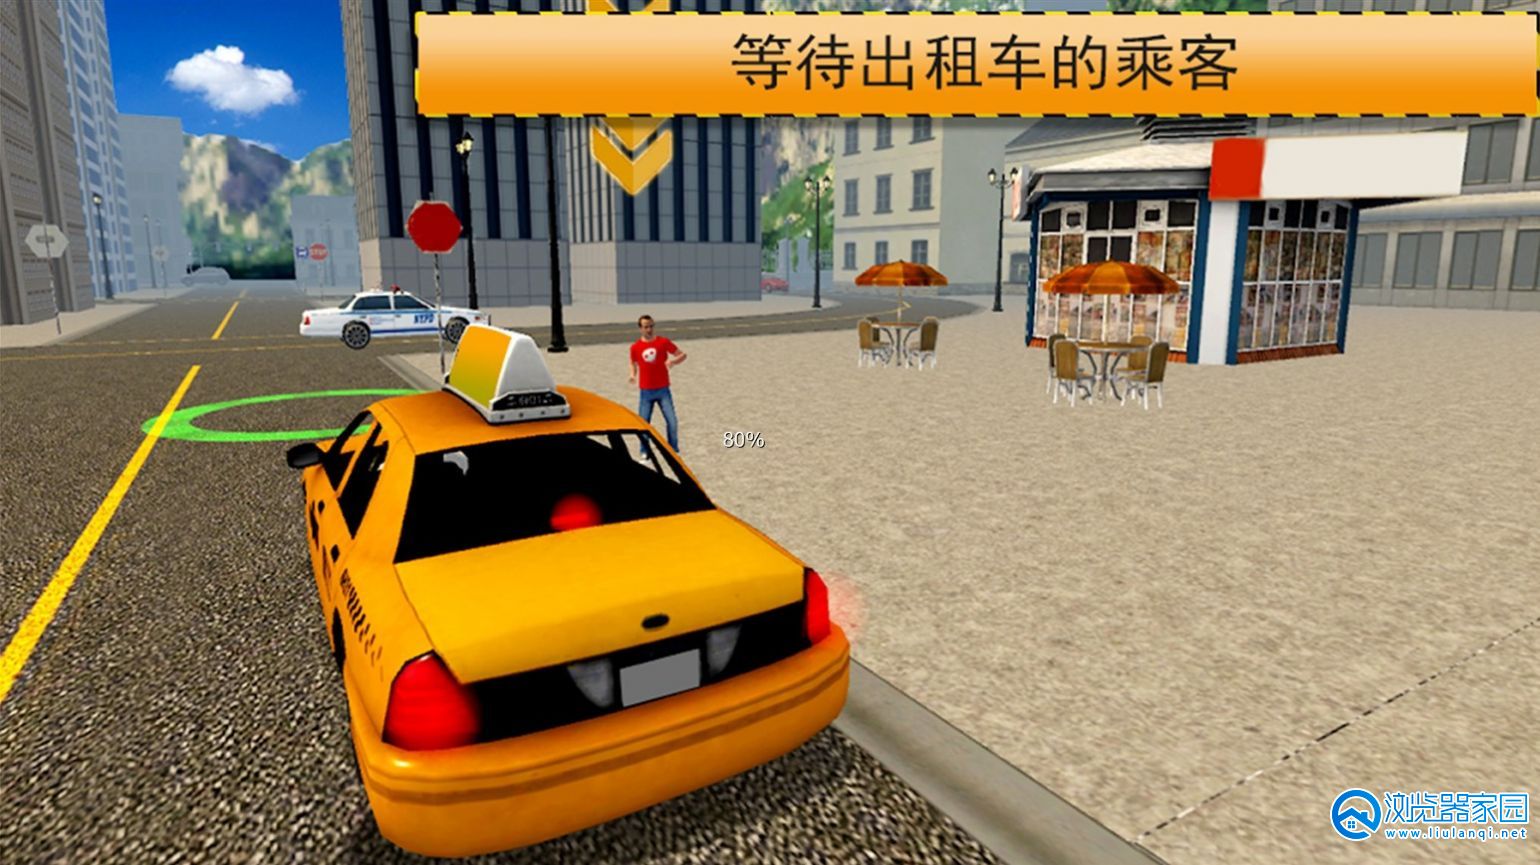 出租车驾驶模拟游戏合集-出租车驾驶模拟游戏大全-出租车驾驶模拟游戏手机版